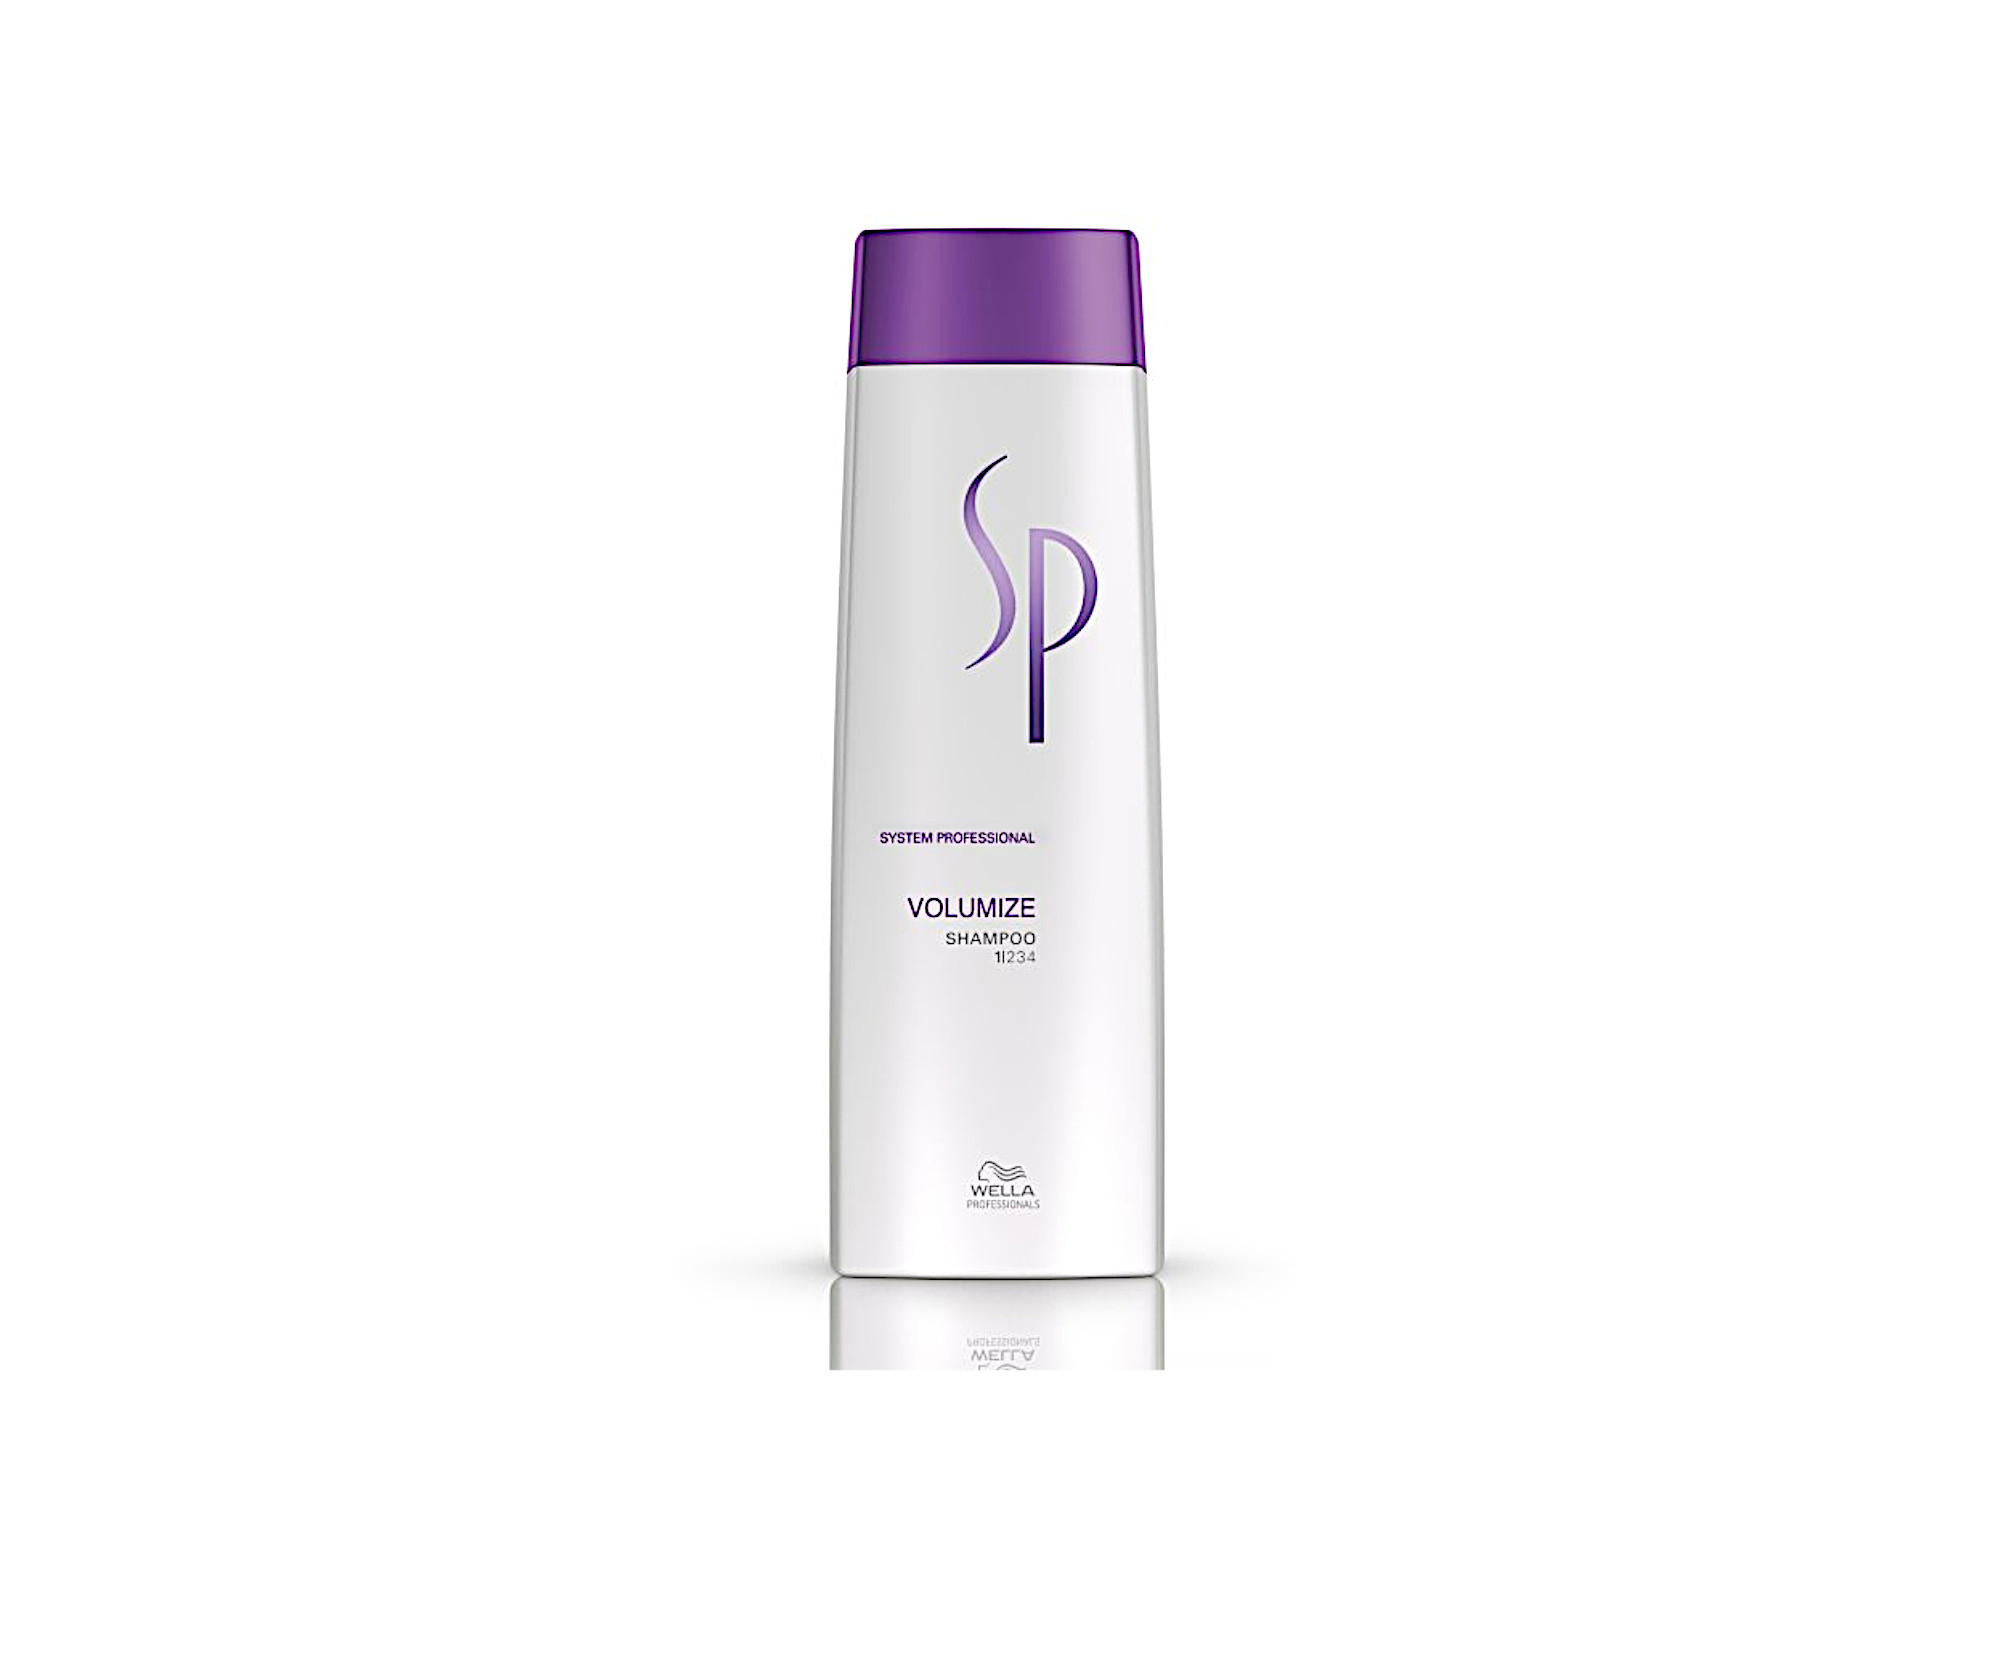 Posilující šampon pro objem jemných vlasů Wella Professionals SP Volumize Shampoo - 250 ml (81589156) + DÁREK ZDARMA